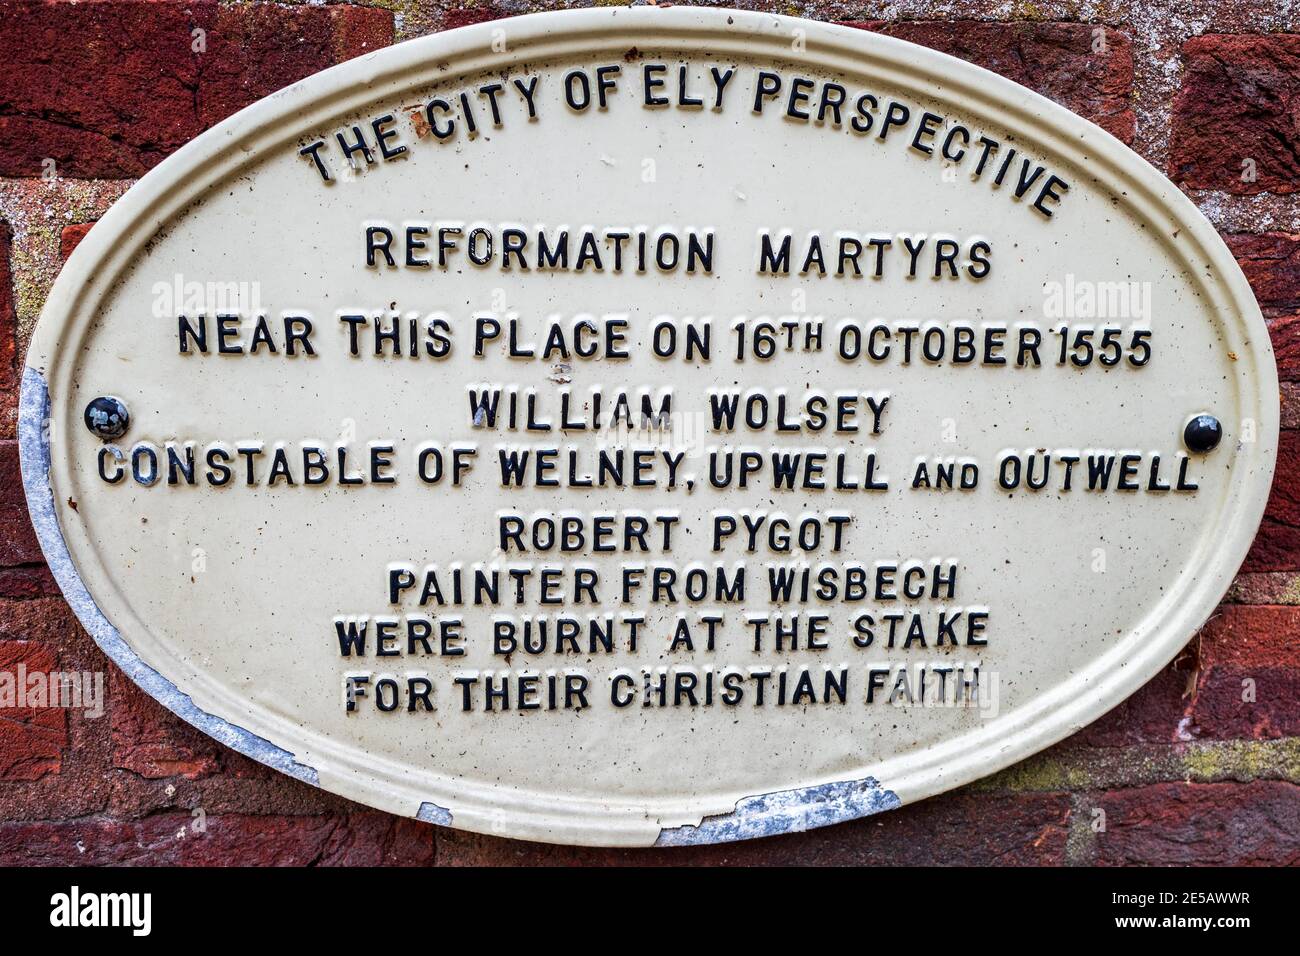 Targa commemorativa di Ely ai martiri della riforma William Wolsey e Robert Pygot che furono bruciati sul palo vicino alla cattedrale di Ely il 16 ottobre 1555. Foto Stock